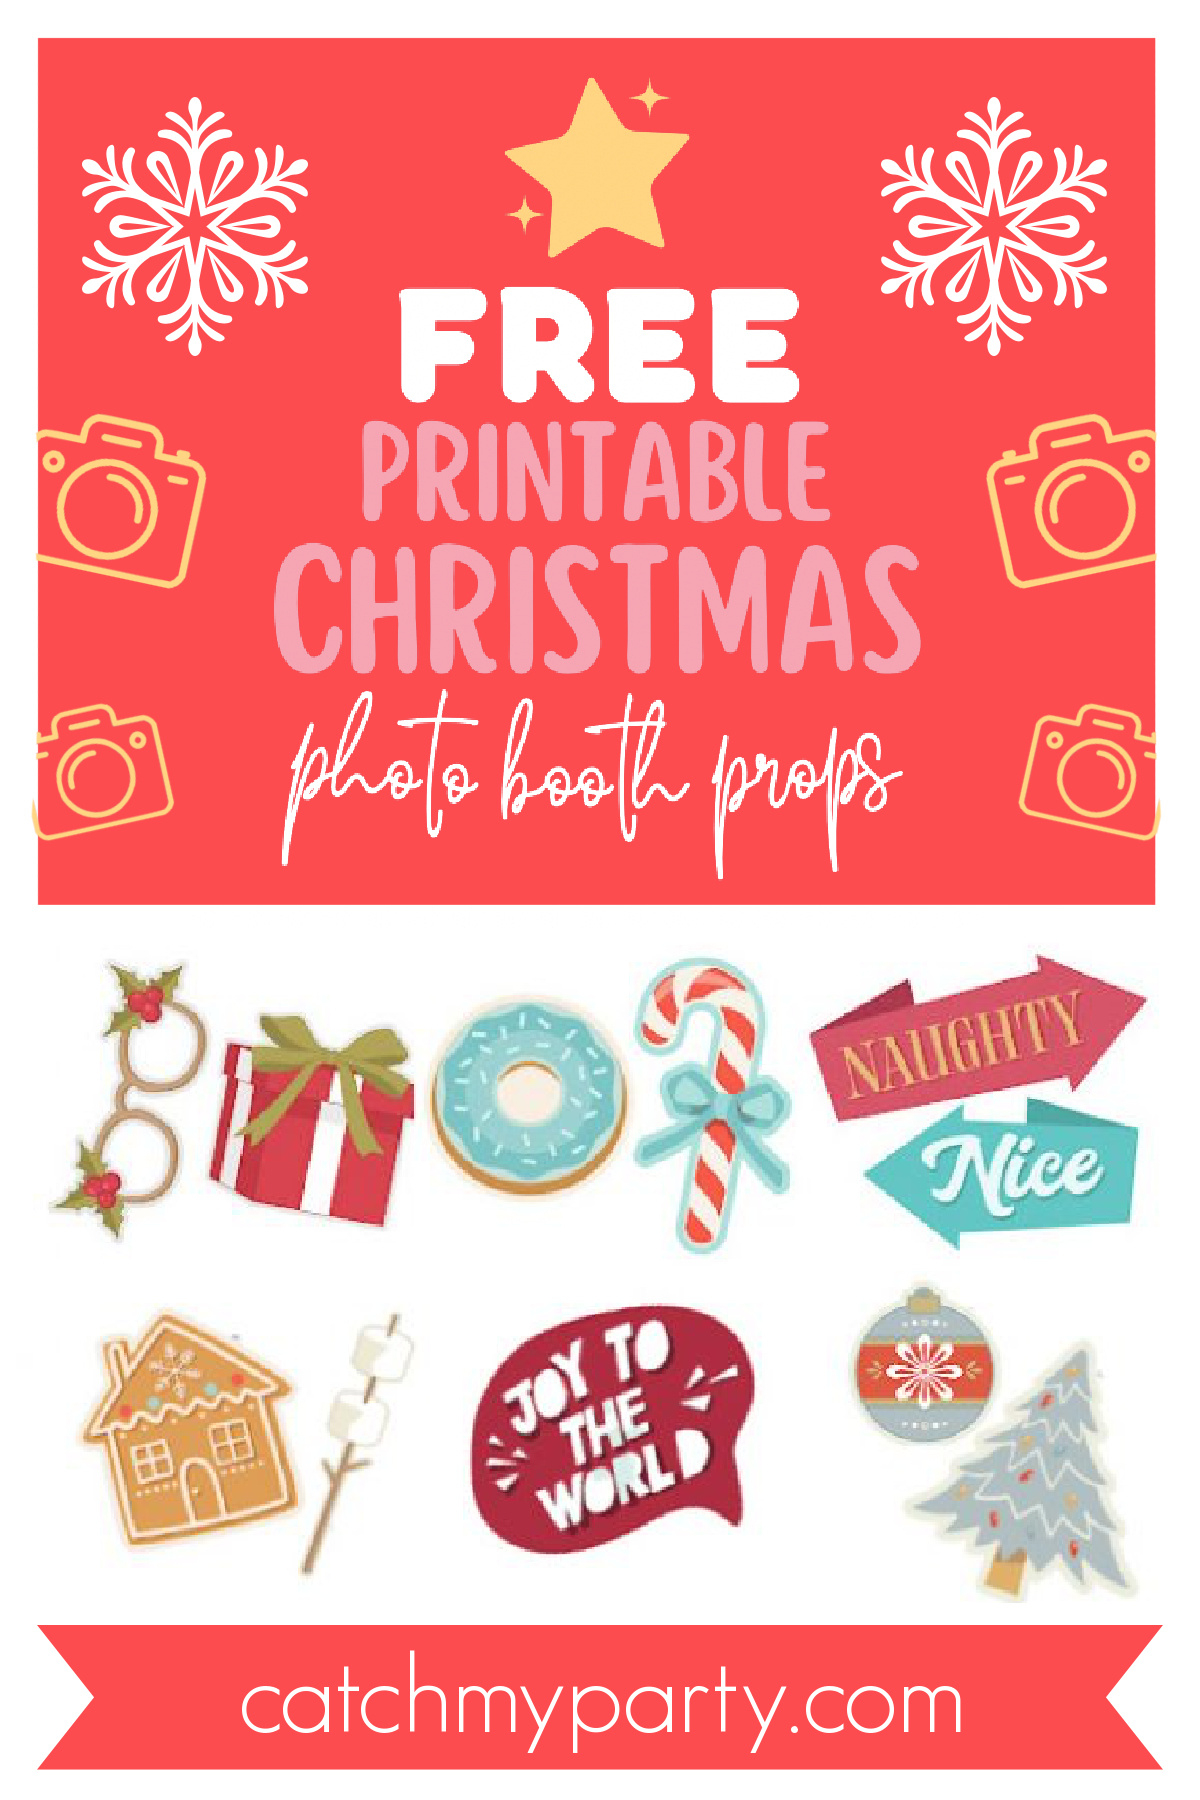 Download All Our 65 Fun Free Printable Christmas Photo Booth Props - Free Photo Booth Props Printable Christmas